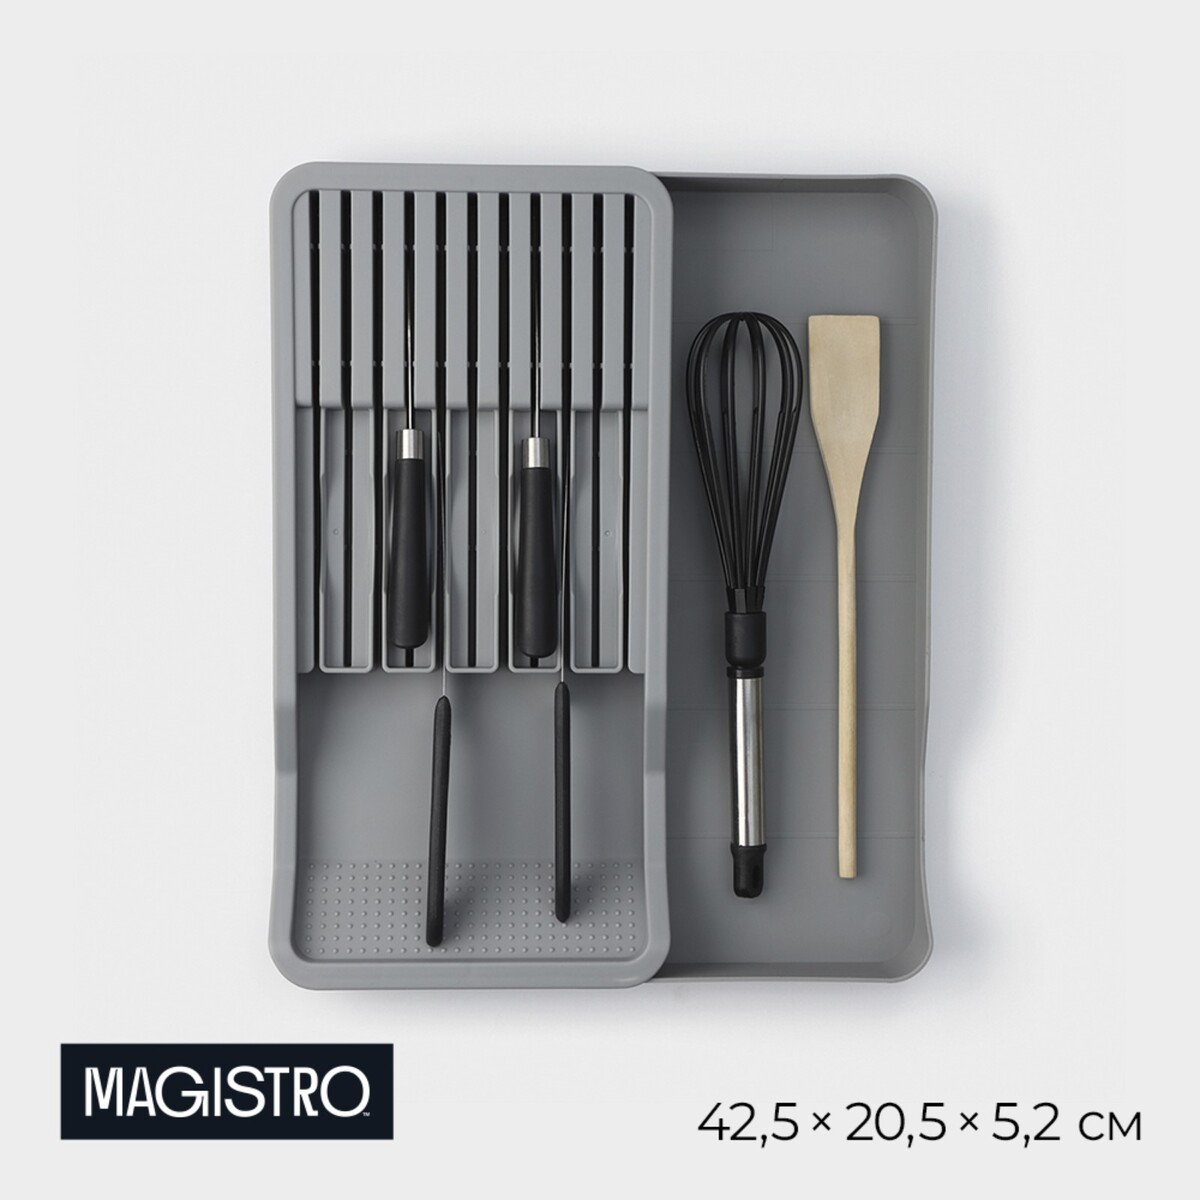 Подставка для кухонных приборов magistro harm, 42,5×20,5×5,2 см, раздвижная, цвет серый